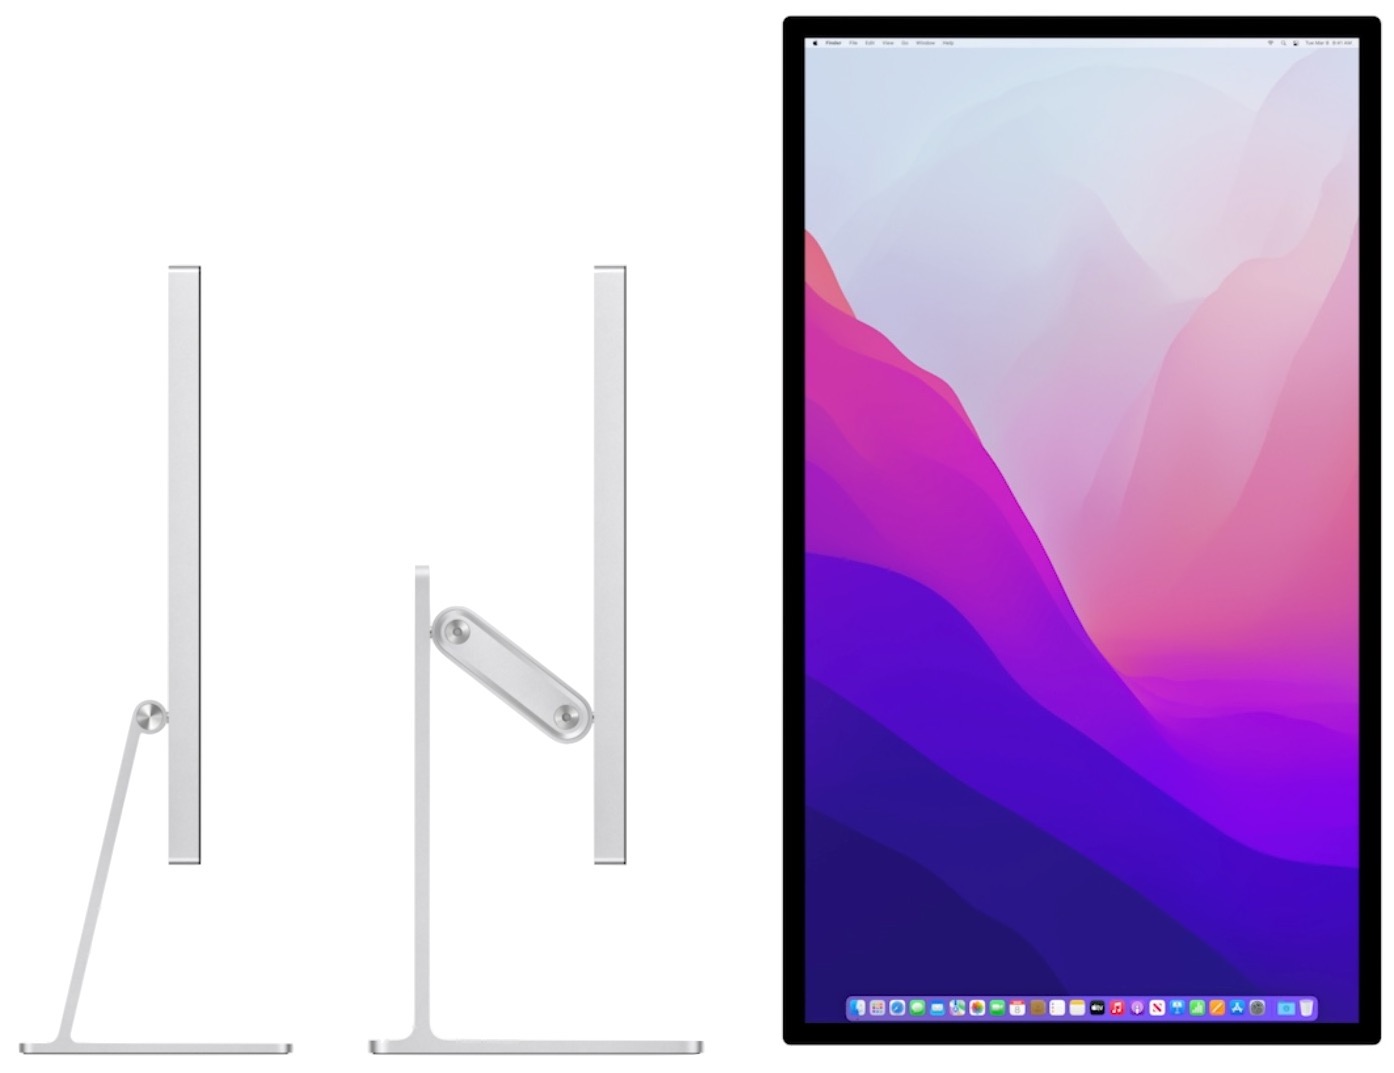 New Mac Studio and Studio Display Change Mac Buying Calculus - TidBITS